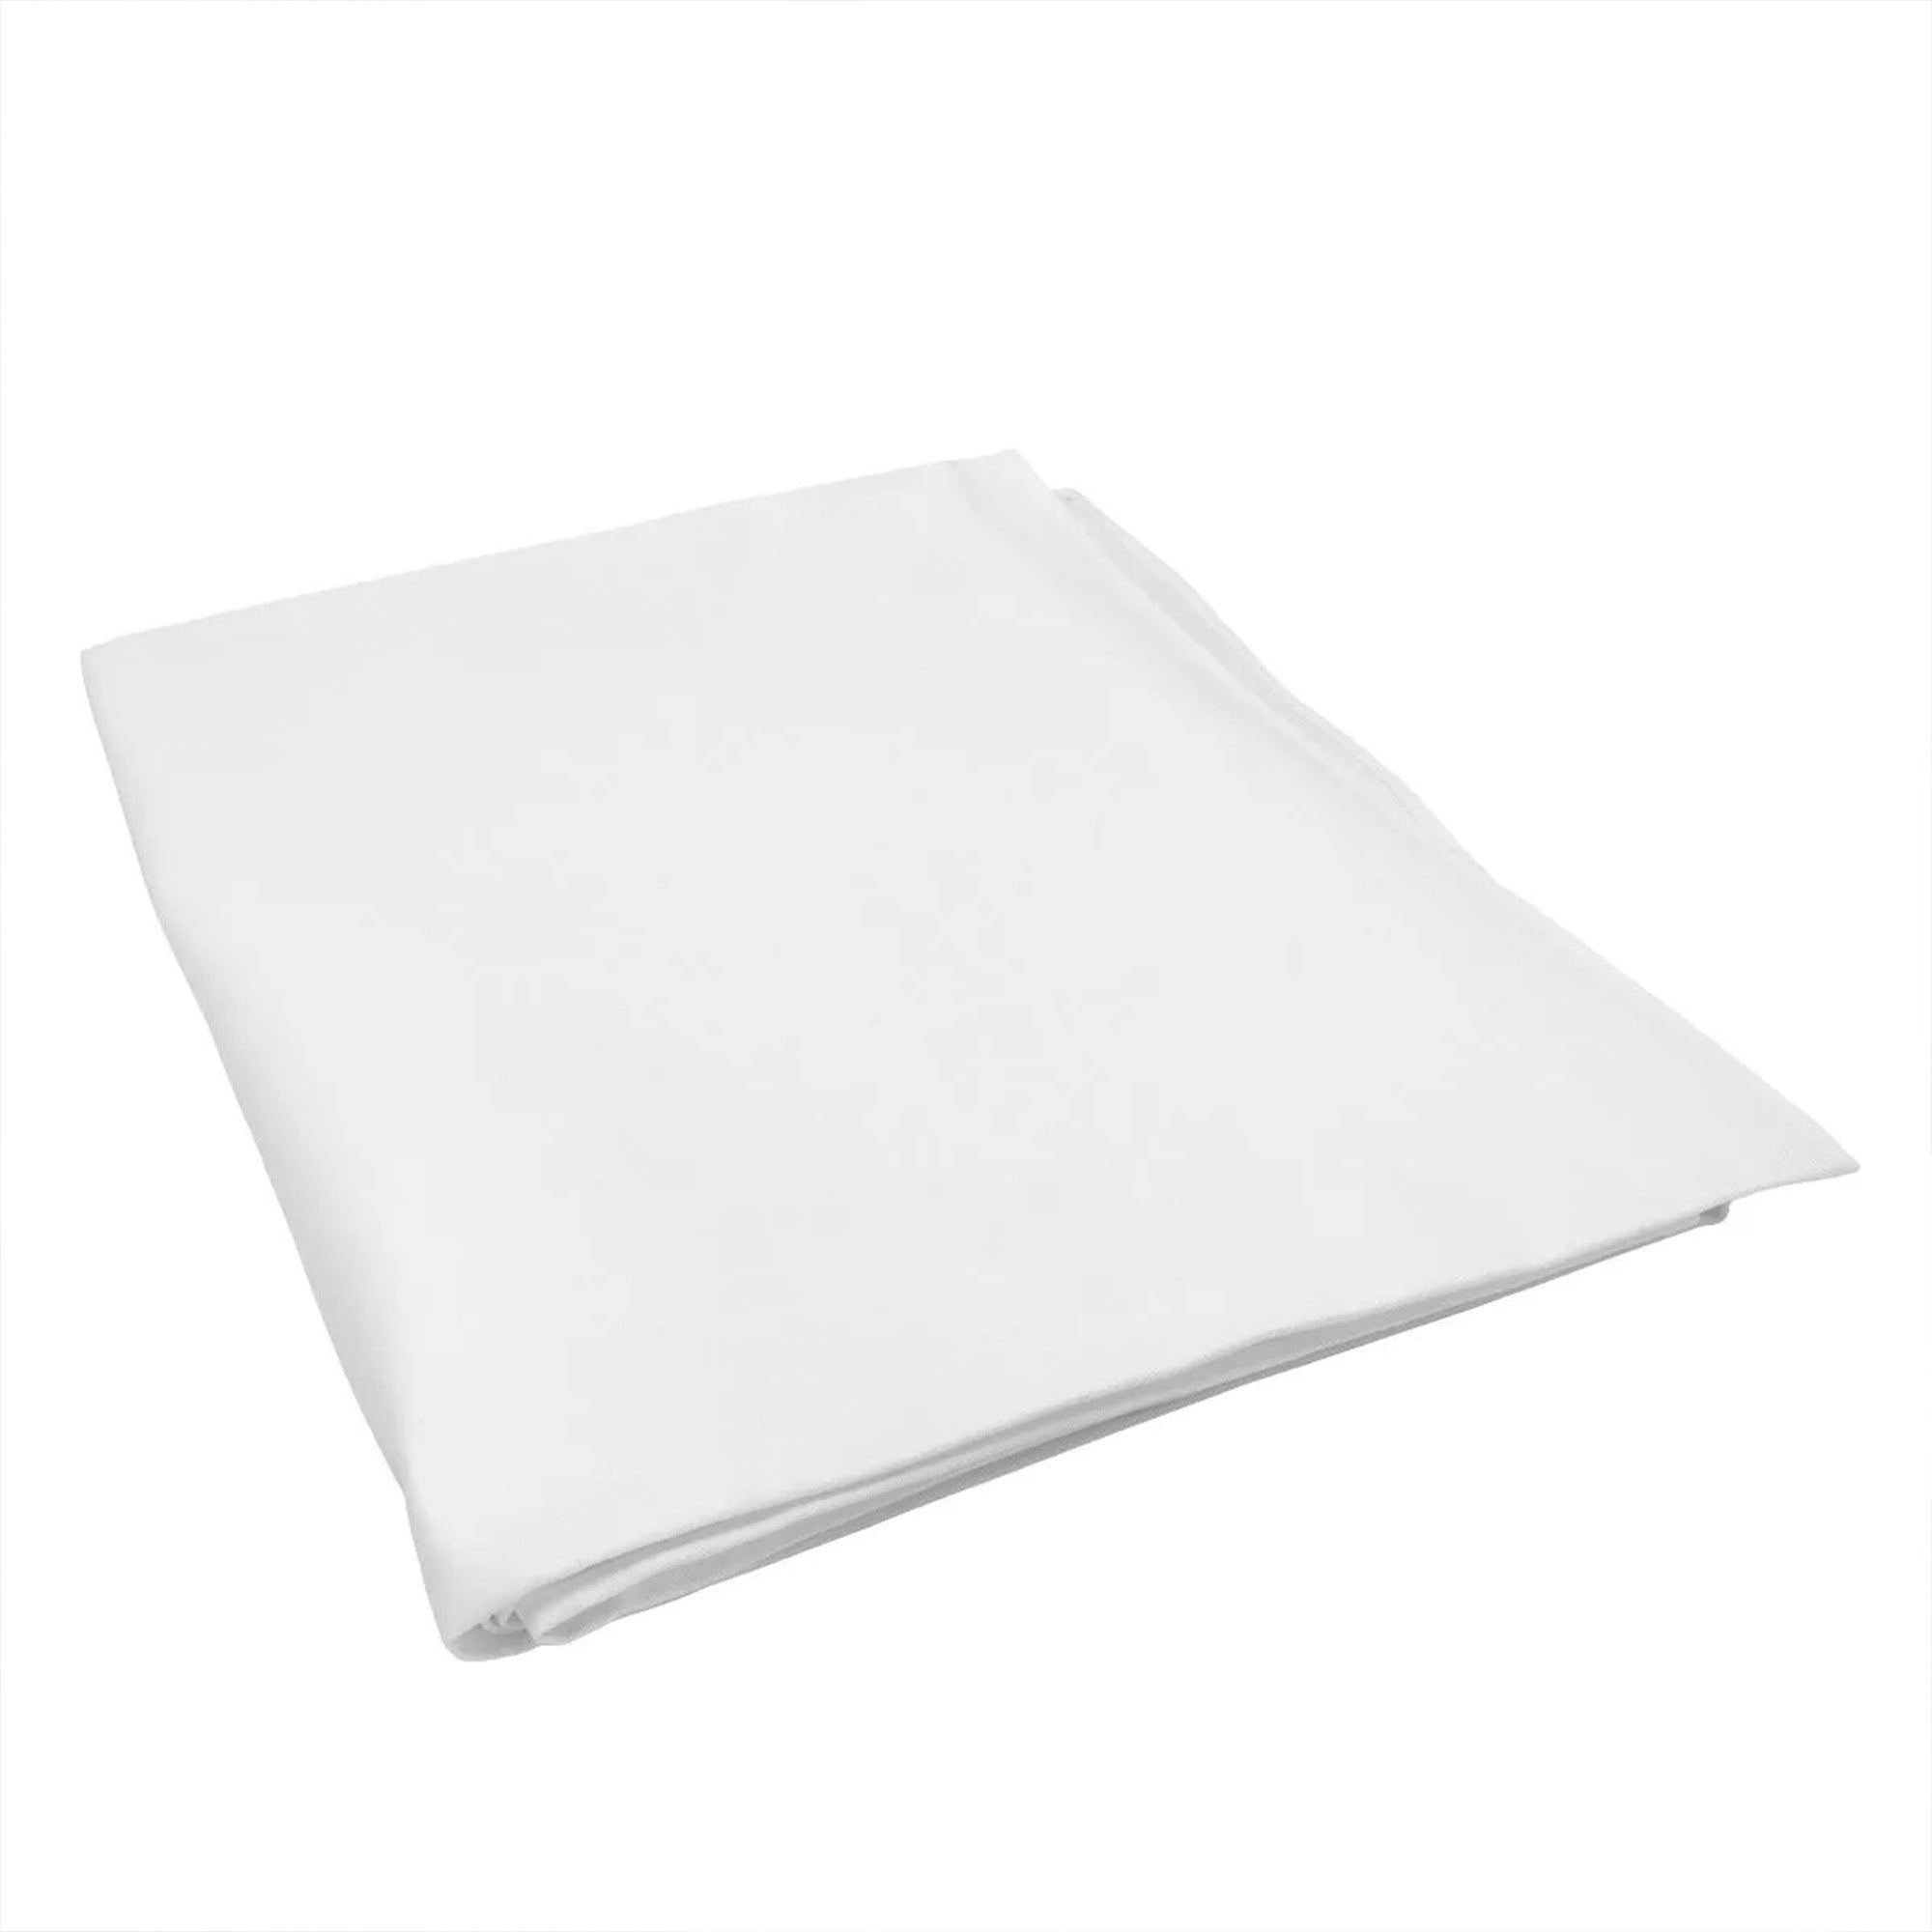 (30 Stykker) Damast Bordduk Porto - glatt sateng - 130 x 190 cm - Hvit